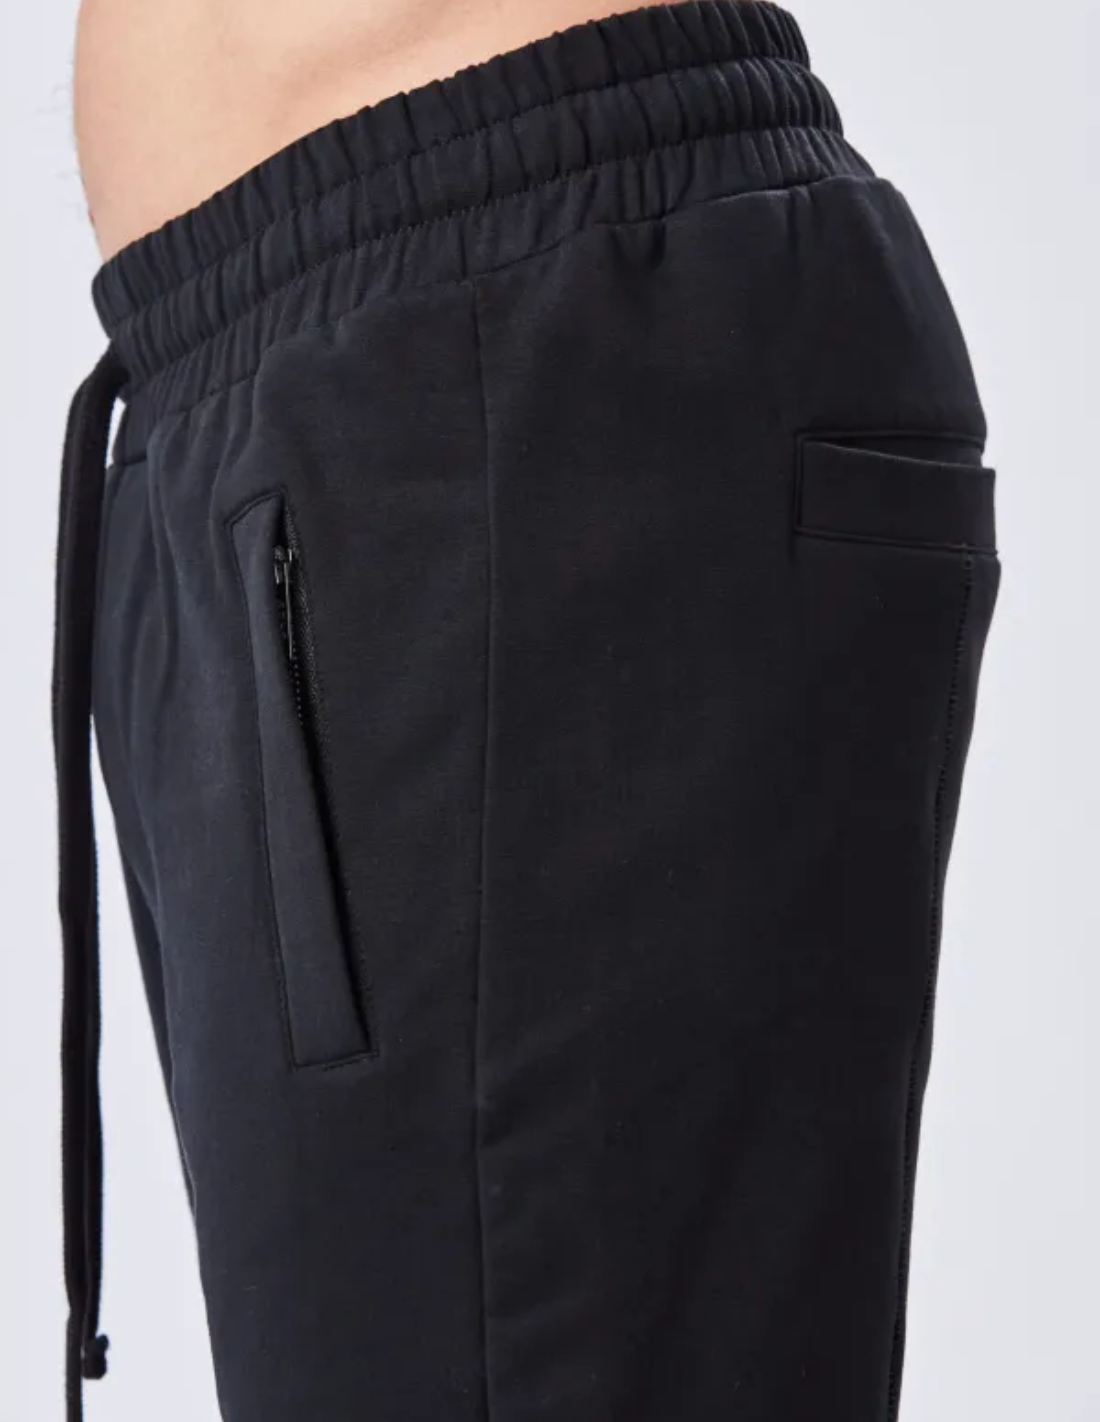 Pantalon de jogging noir Thom Krom droit et ample - noir